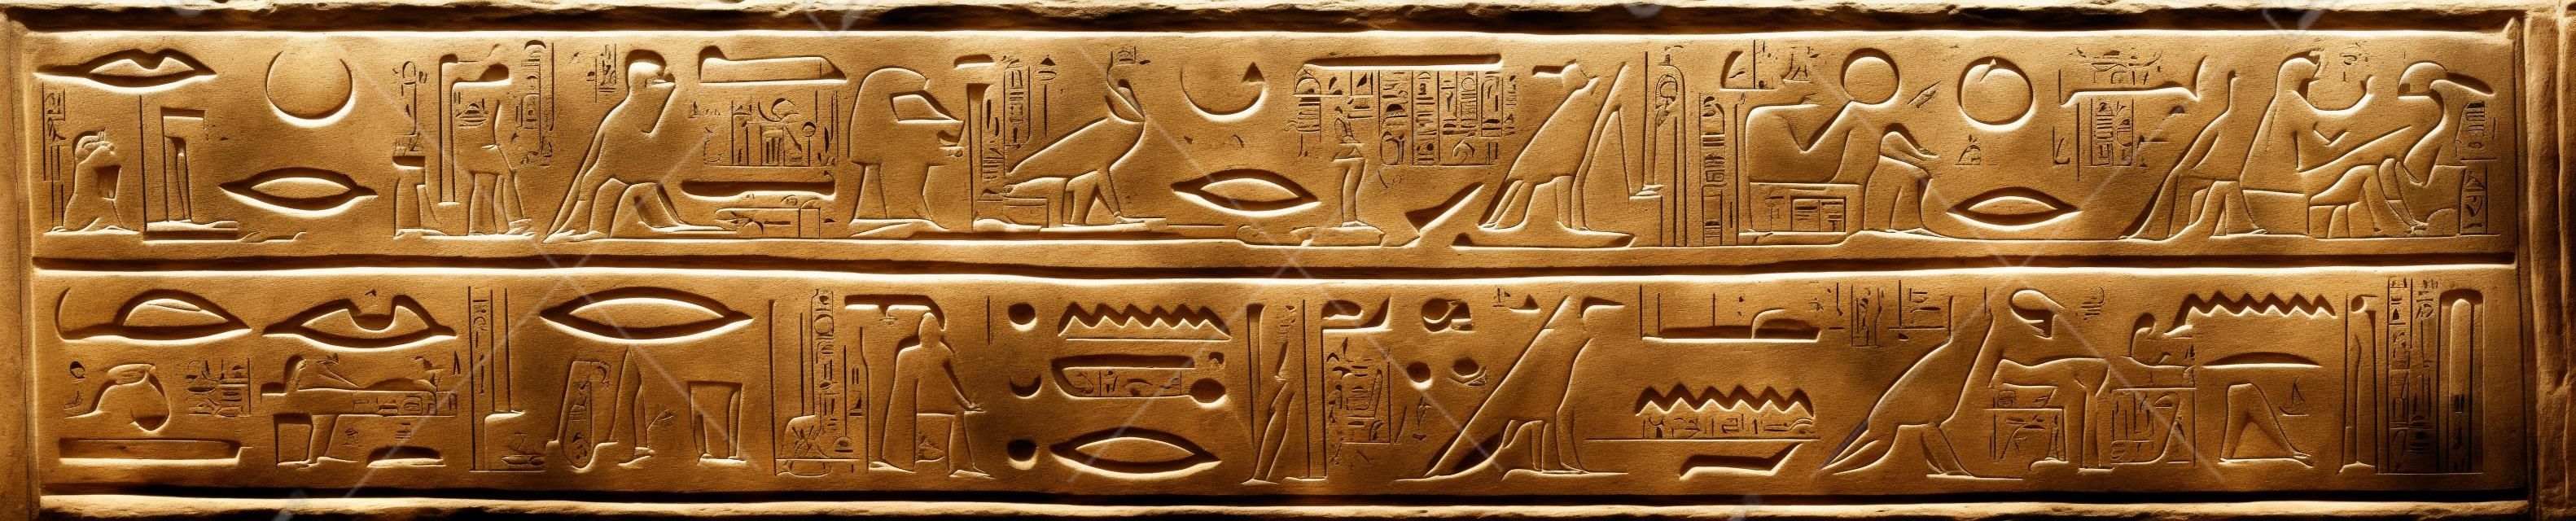 Antiguos jeroglíficos egipcios tallados en la piedra